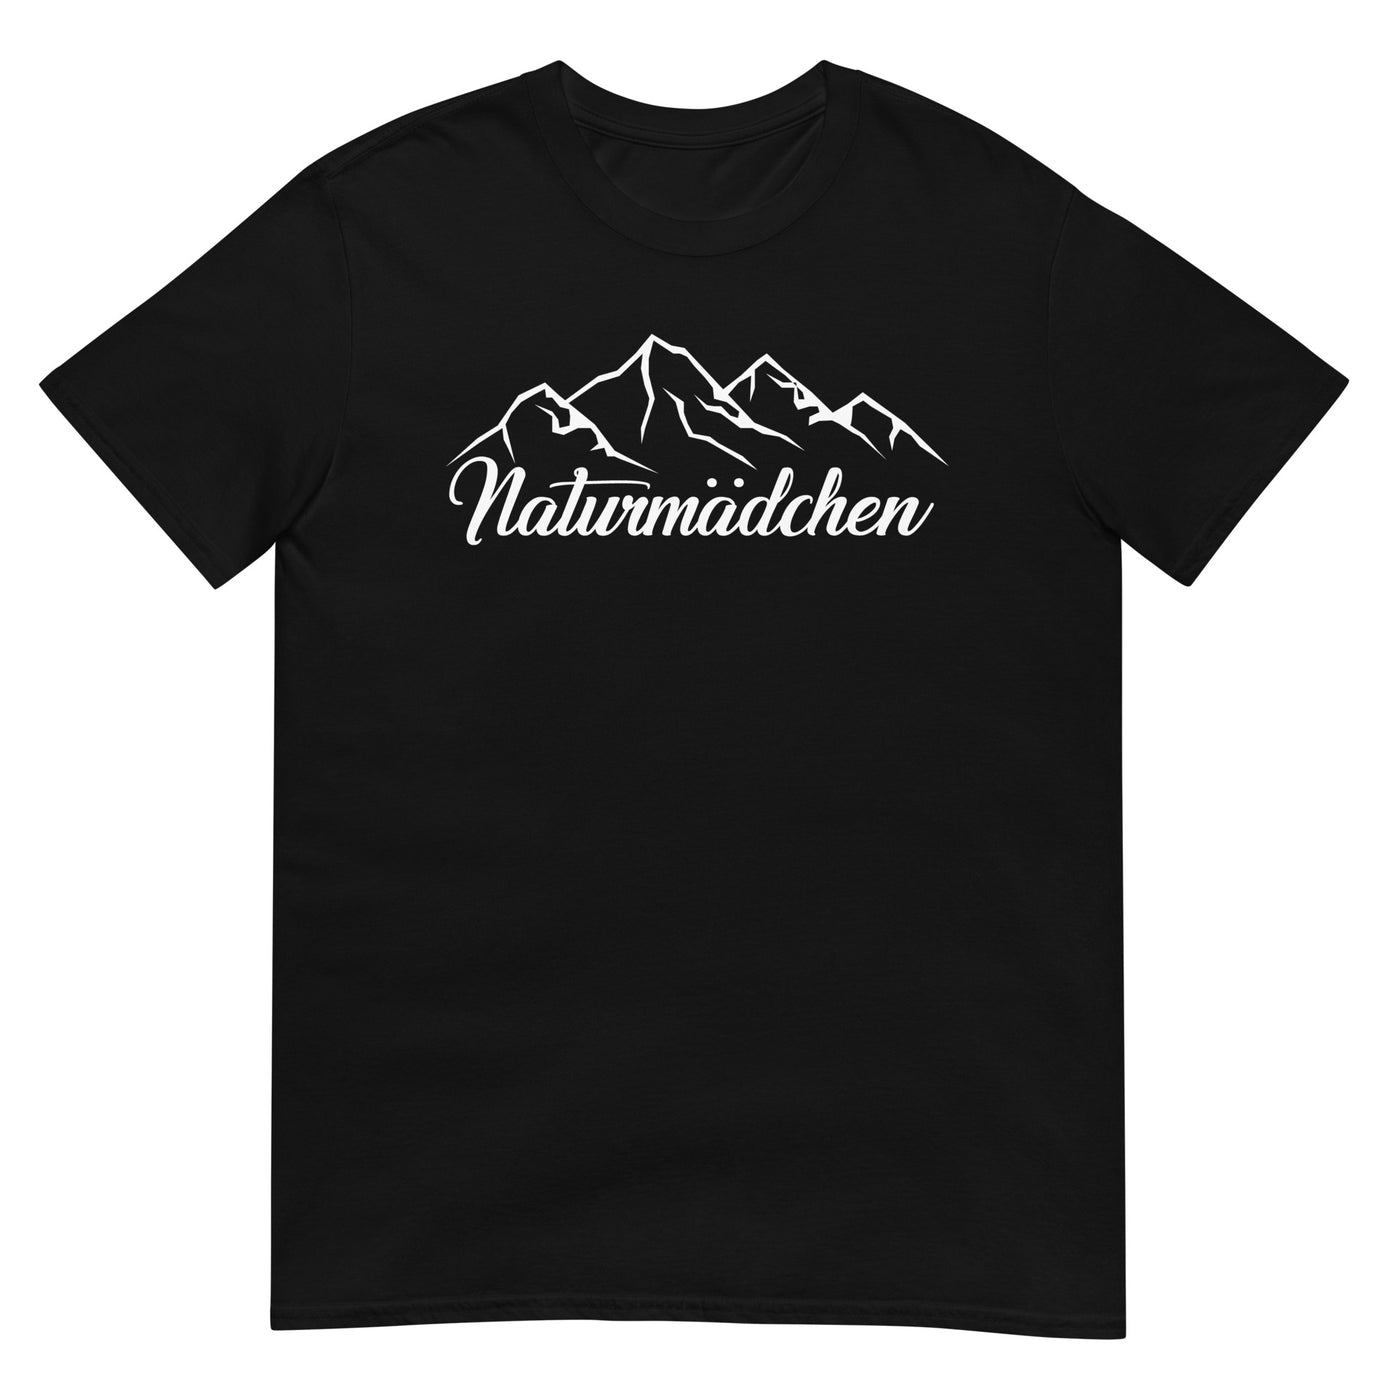 Naturmadchen - T-Shirt (Unisex) berge xxx yyy zzz Black